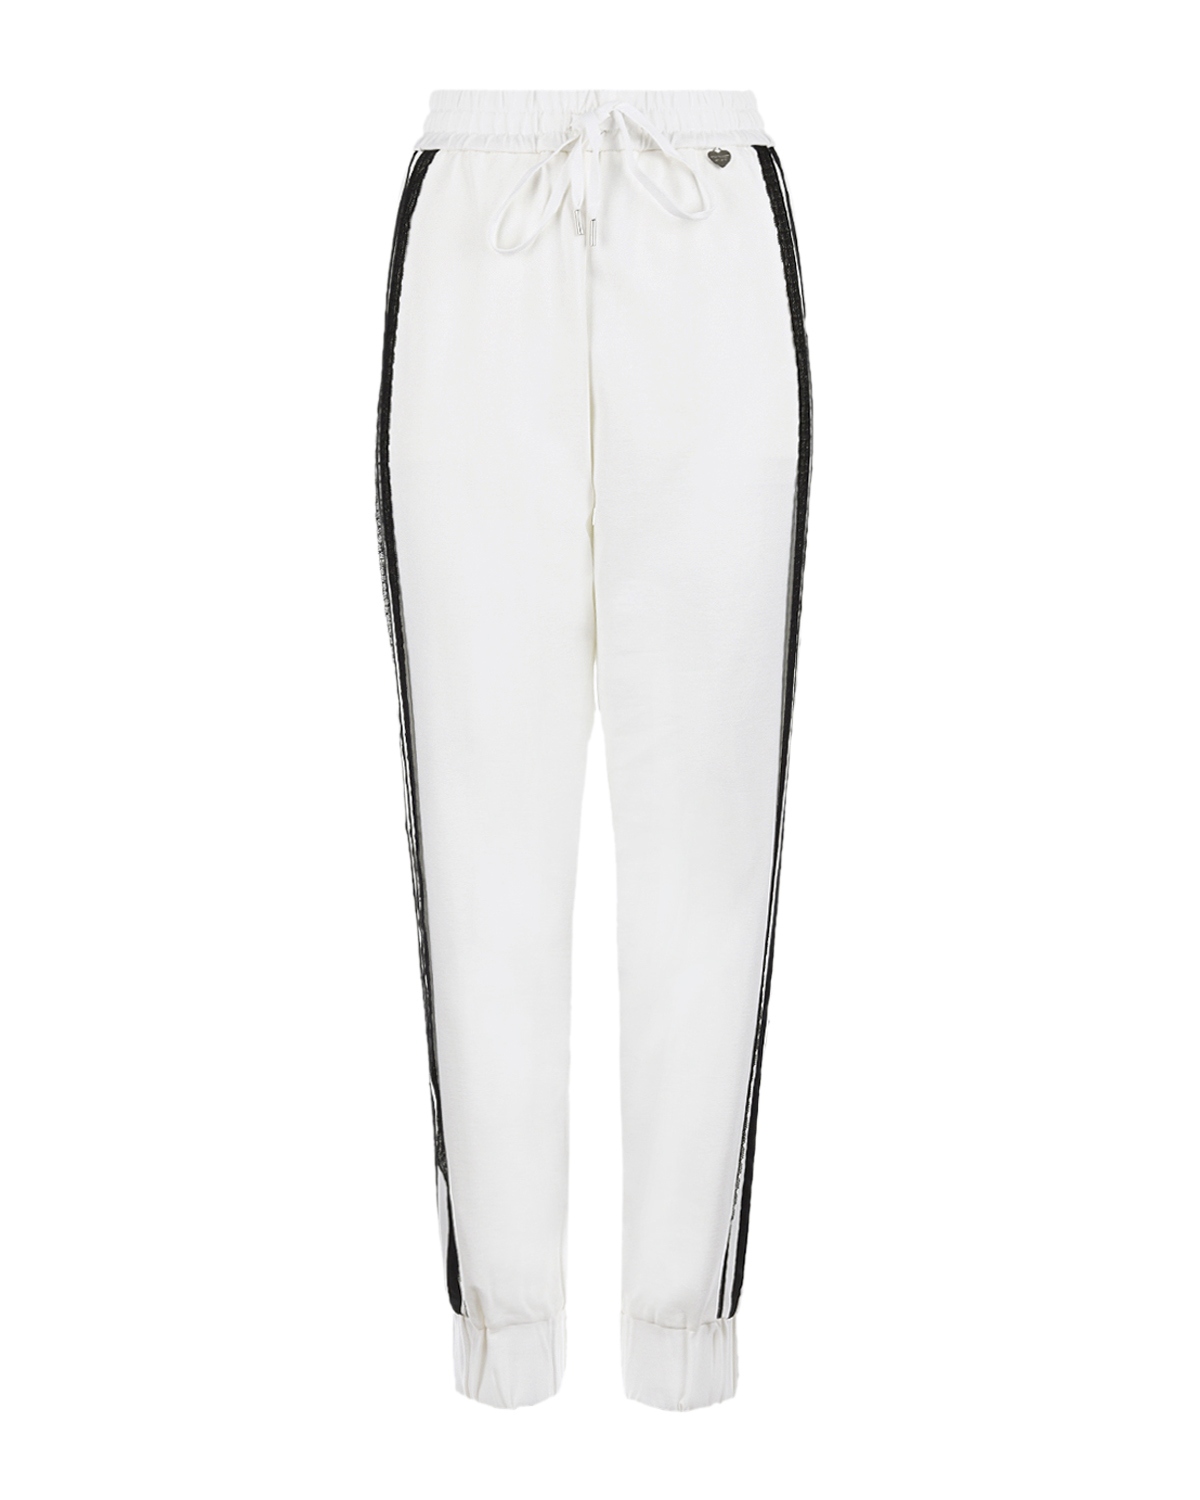 Белые спортивные брюки с черными лампасами TWINSET, размер 42, цвет белый - фото 1